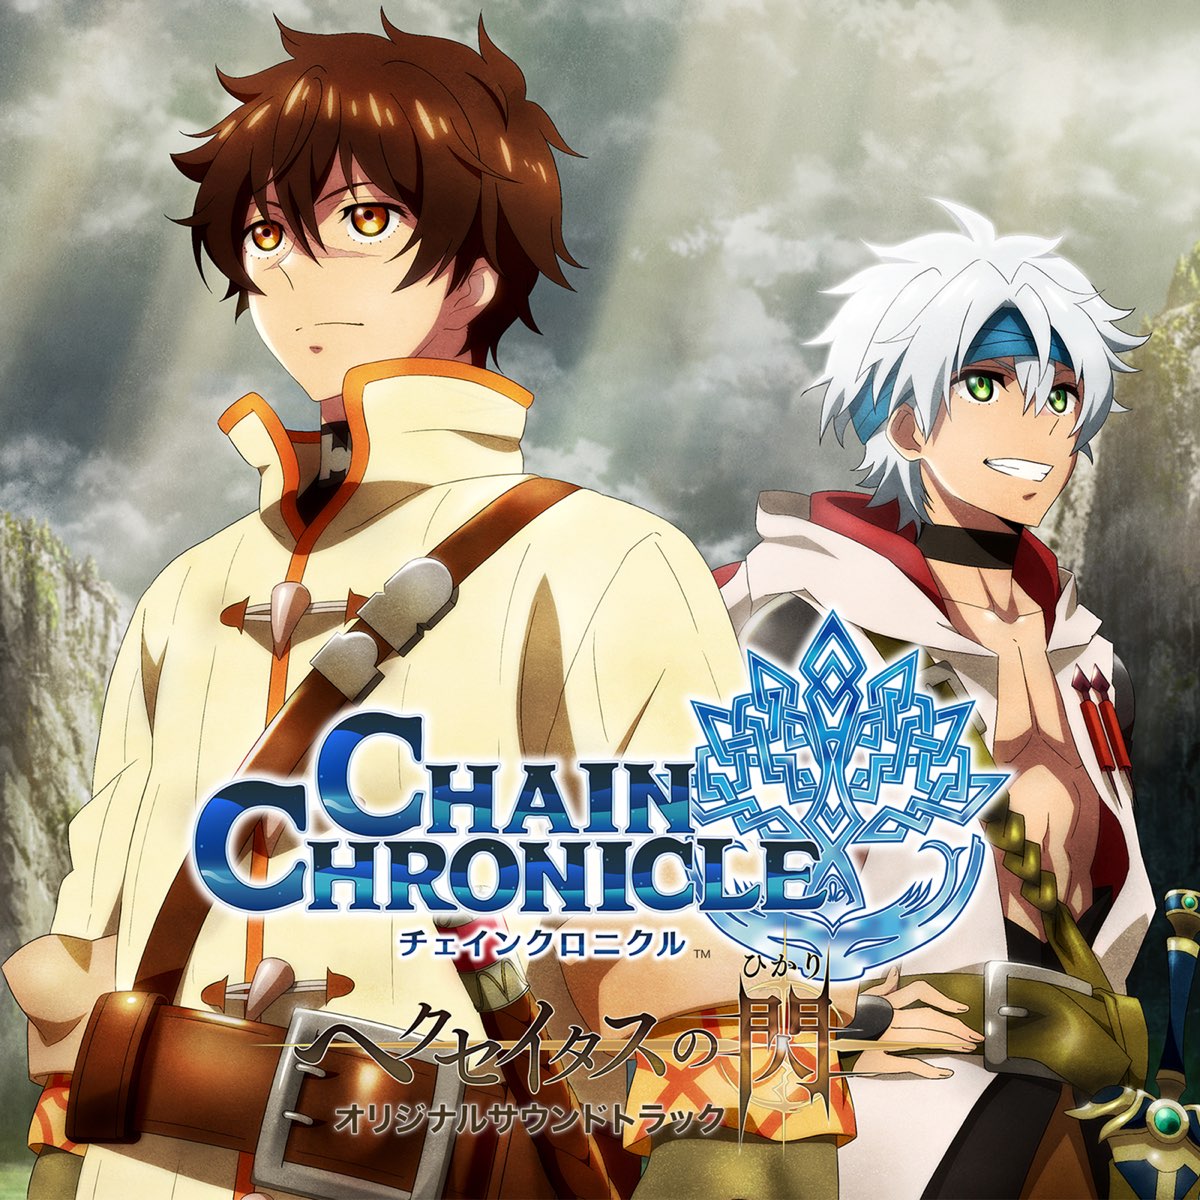 Dublado EN) Chain Chronicle - The Light of Haecceitas - Os gritos da  montanha nevada - Assista na Crunchyroll